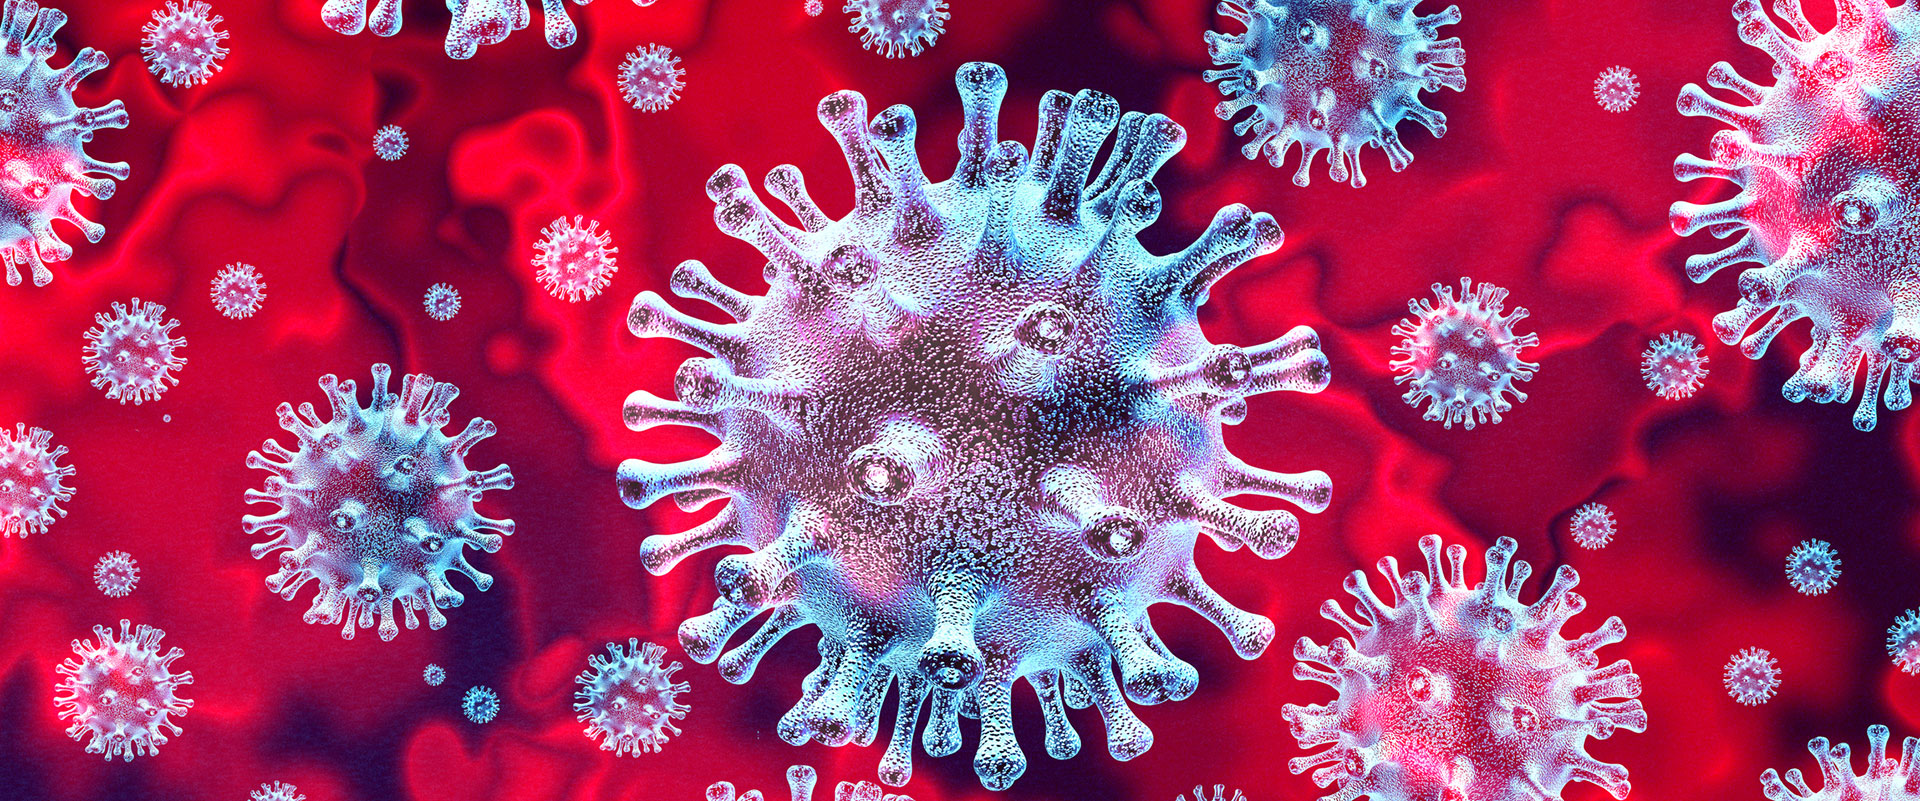 Coronavirus influenza